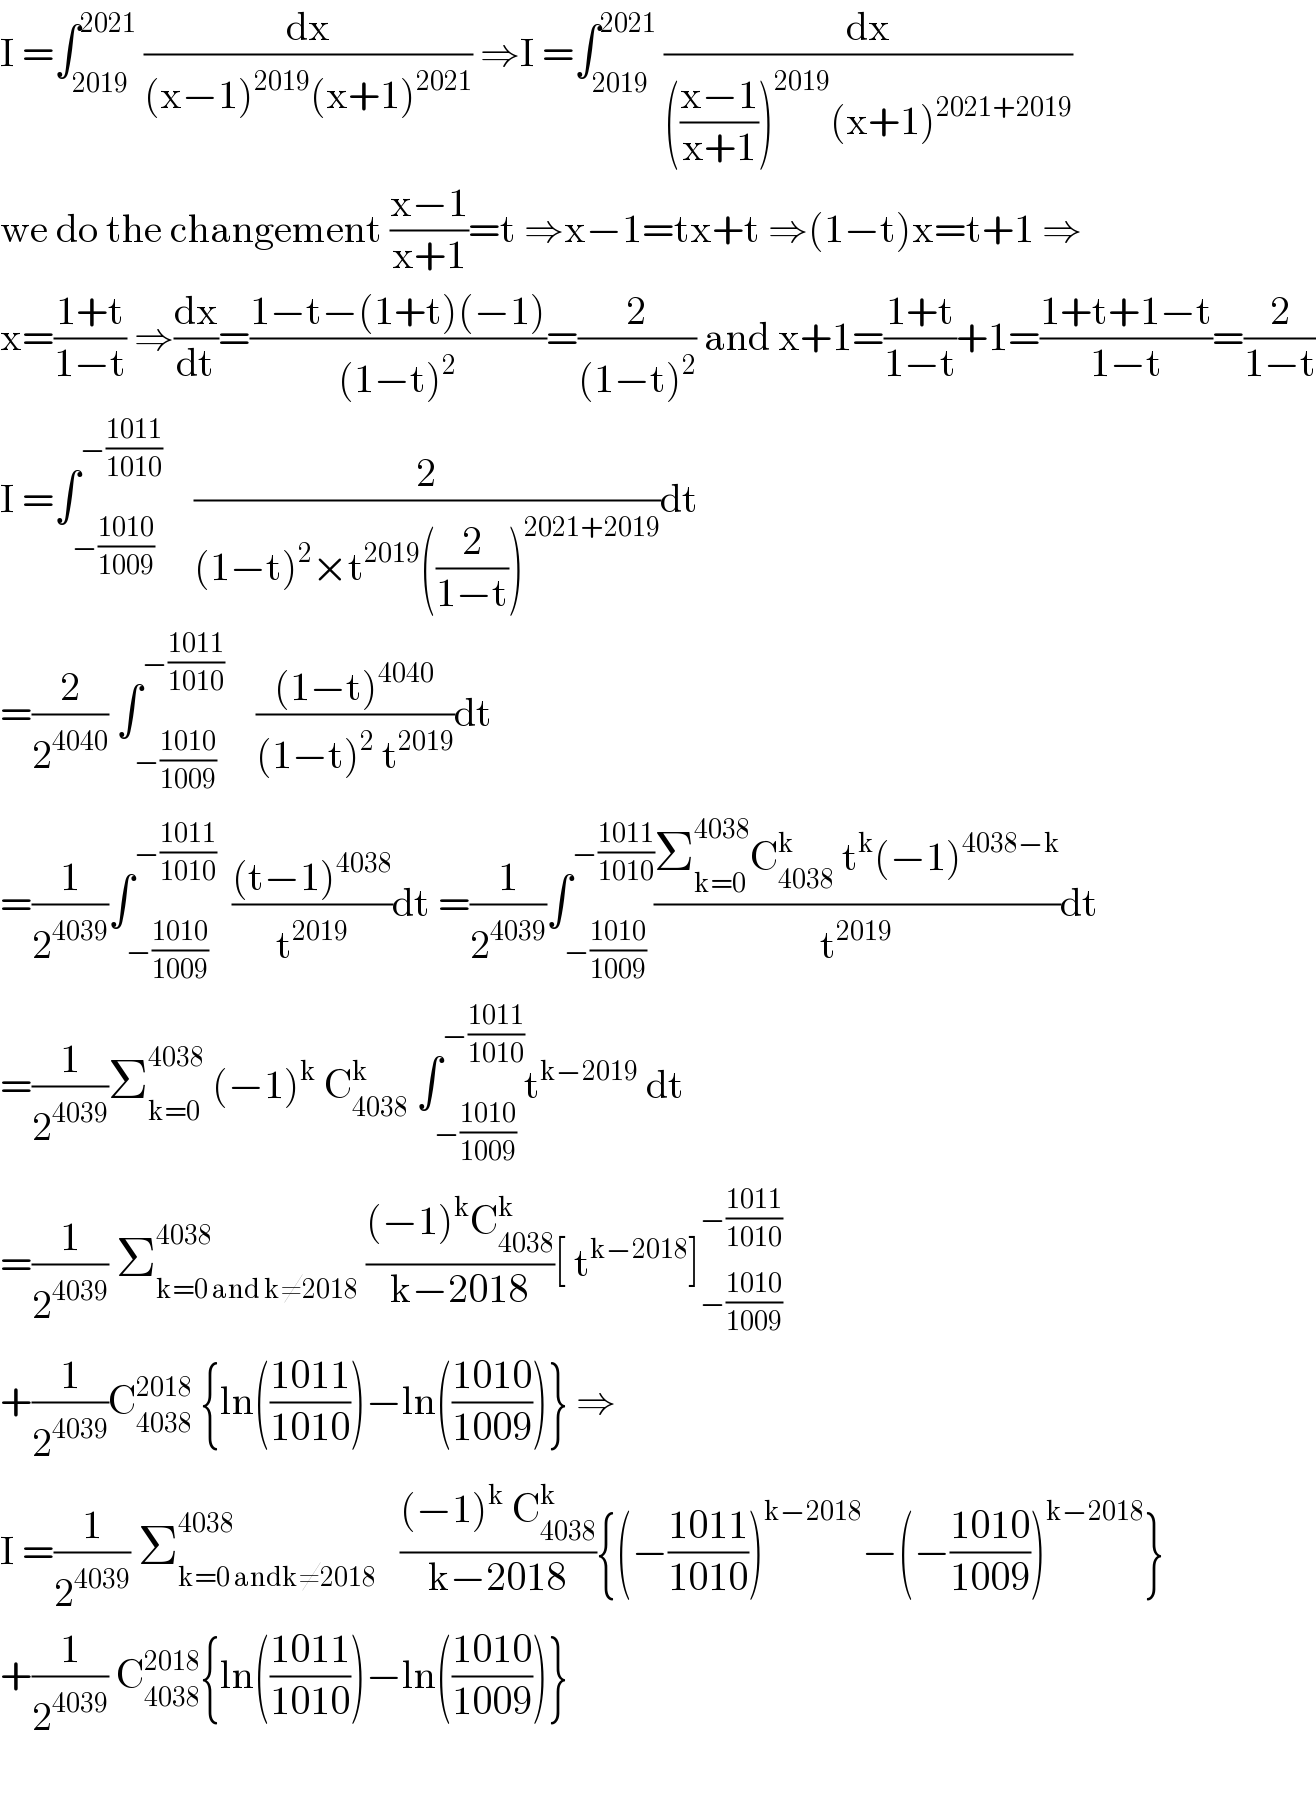 I =∫_(2019) ^(2021)  (dx/((x−1)^(2019) (x+1)^(2021) )) ⇒I =∫_(2019) ^(2021)  (dx/((((x−1)/(x+1)))^(2019) (x+1)^(2021+2019) ))  we do the changement ((x−1)/(x+1))=t ⇒x−1=tx+t ⇒(1−t)x=t+1 ⇒  x=((1+t)/(1−t)) ⇒(dx/dt)=((1−t−(1+t)(−1))/((1−t)^2 ))=(2/((1−t)^2 )) and x+1=((1+t)/(1−t))+1=((1+t+1−t)/(1−t))=(2/(1−t))  I =∫_(−((1010)/(1009))) ^(−((1011)/(1010)))     (2/((1−t)^2 ×t^(2019) ((2/(1−t)))^(2021+2019) ))dt  =(2/2^(4040) ) ∫_(−((1010)/(1009))) ^(−((1011)/(1010)))     (((1−t)^(4040) )/((1−t)^2  t^(2019) ))dt  =(1/2^(4039) )∫_(−((1010)/(1009))) ^(−((1011)/(1010)))   (((t−1)^(4038) )/t^(2019) )dt =(1/2^(4039) )∫_(−((1010)/(1009))) ^(−((1011)/(1010))) ((Σ_(k=0) ^(4038) C_(4038) ^k  t^k (−1)^(4038−k) )/t^(2019) )dt  =(1/2^(4039) )Σ_(k=0) ^(4038)  (−1)^k  C_(4038) ^k  ∫_(−((1010)/(1009))) ^(−((1011)/(1010))) t^(k−2019)  dt  =(1/2^(4039) ) Σ_(k=0 and k≠2018) ^(4038)  (((−1)^k C_(4038) ^k )/(k−2018))[ t^(k−2018) ]_(−((1010)/(1009))) ^(−((1011)/(1010)))   +(1/2^(4039) )C_(4038) ^(2018)  {ln(((1011)/(1010)))−ln(((1010)/(1009)))} ⇒  I =(1/2^(4039) ) Σ_(k=0 andk≠2018) ^(4038)    (((−1)^k  C_(4038) ^k )/(k−2018)){(−((1011)/(1010)))^(k−2018) −(−((1010)/(1009)))^(k−2018) }  +(1/2^(4039) ) C_(4038) ^(2018) {ln(((1011)/(1010)))−ln(((1010)/(1009)))}    